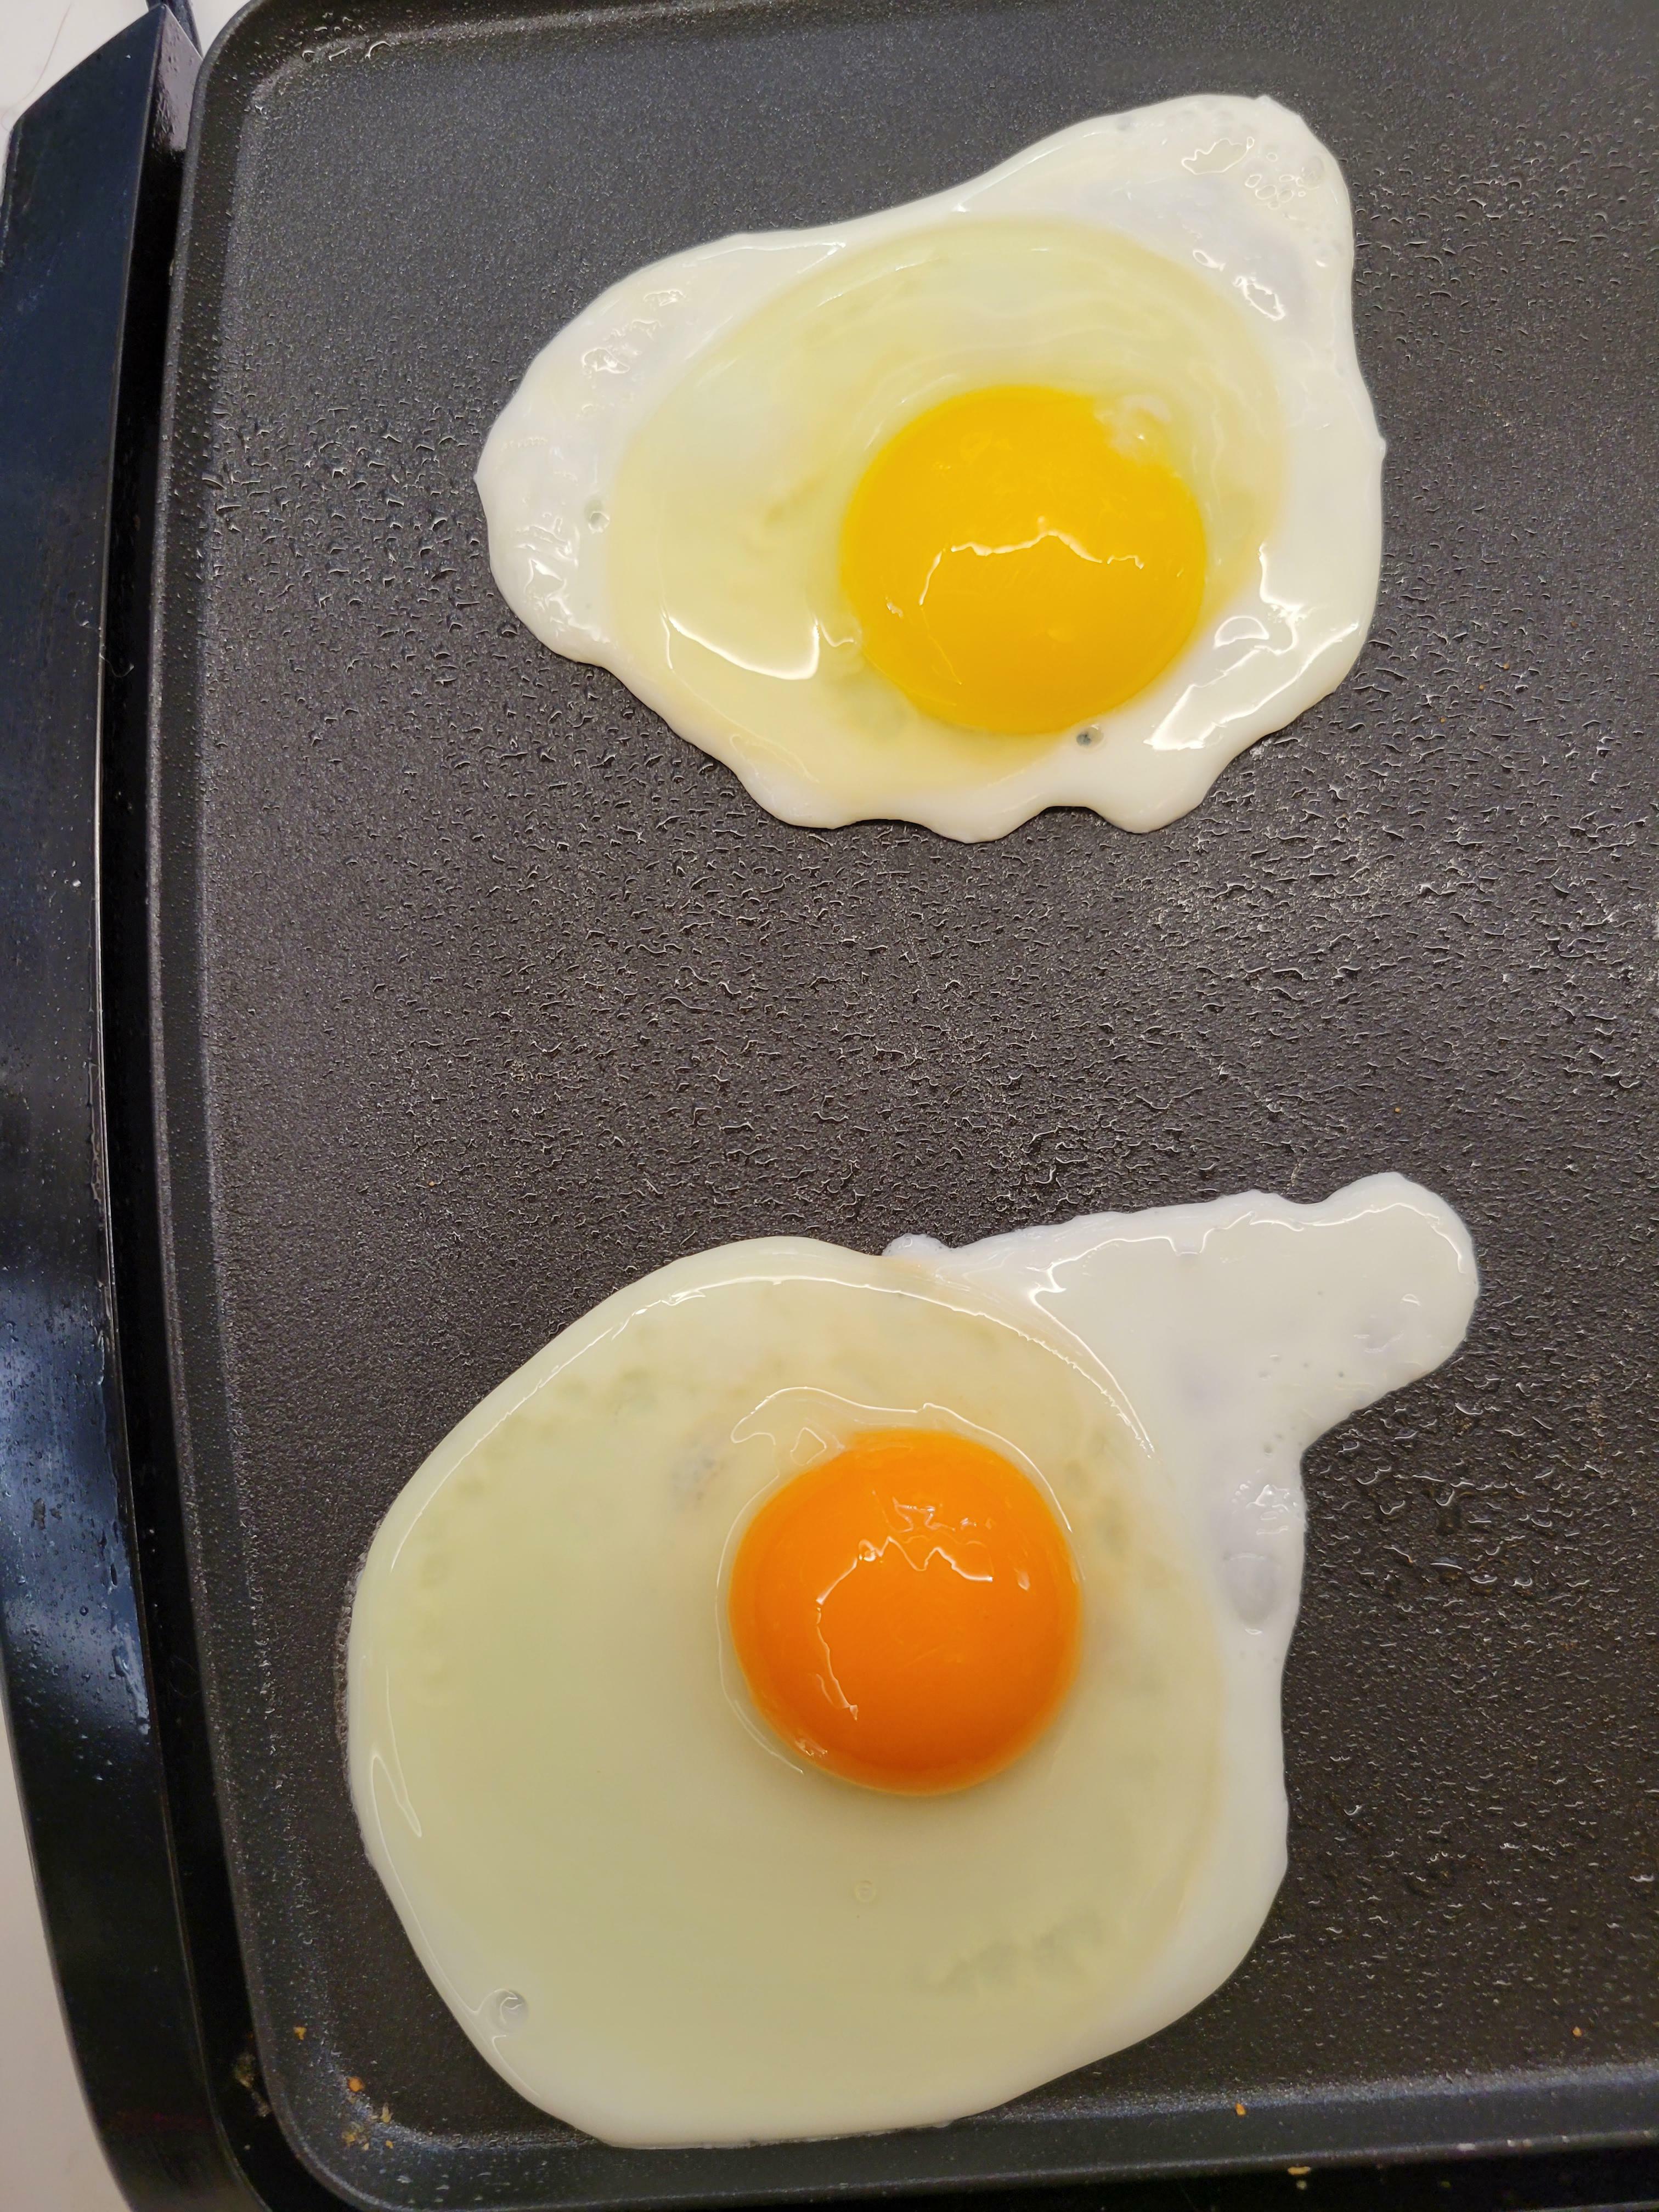 un œuf acheté sur un marché de producteurs (en bas) comparé à un œuf acheté en magasin